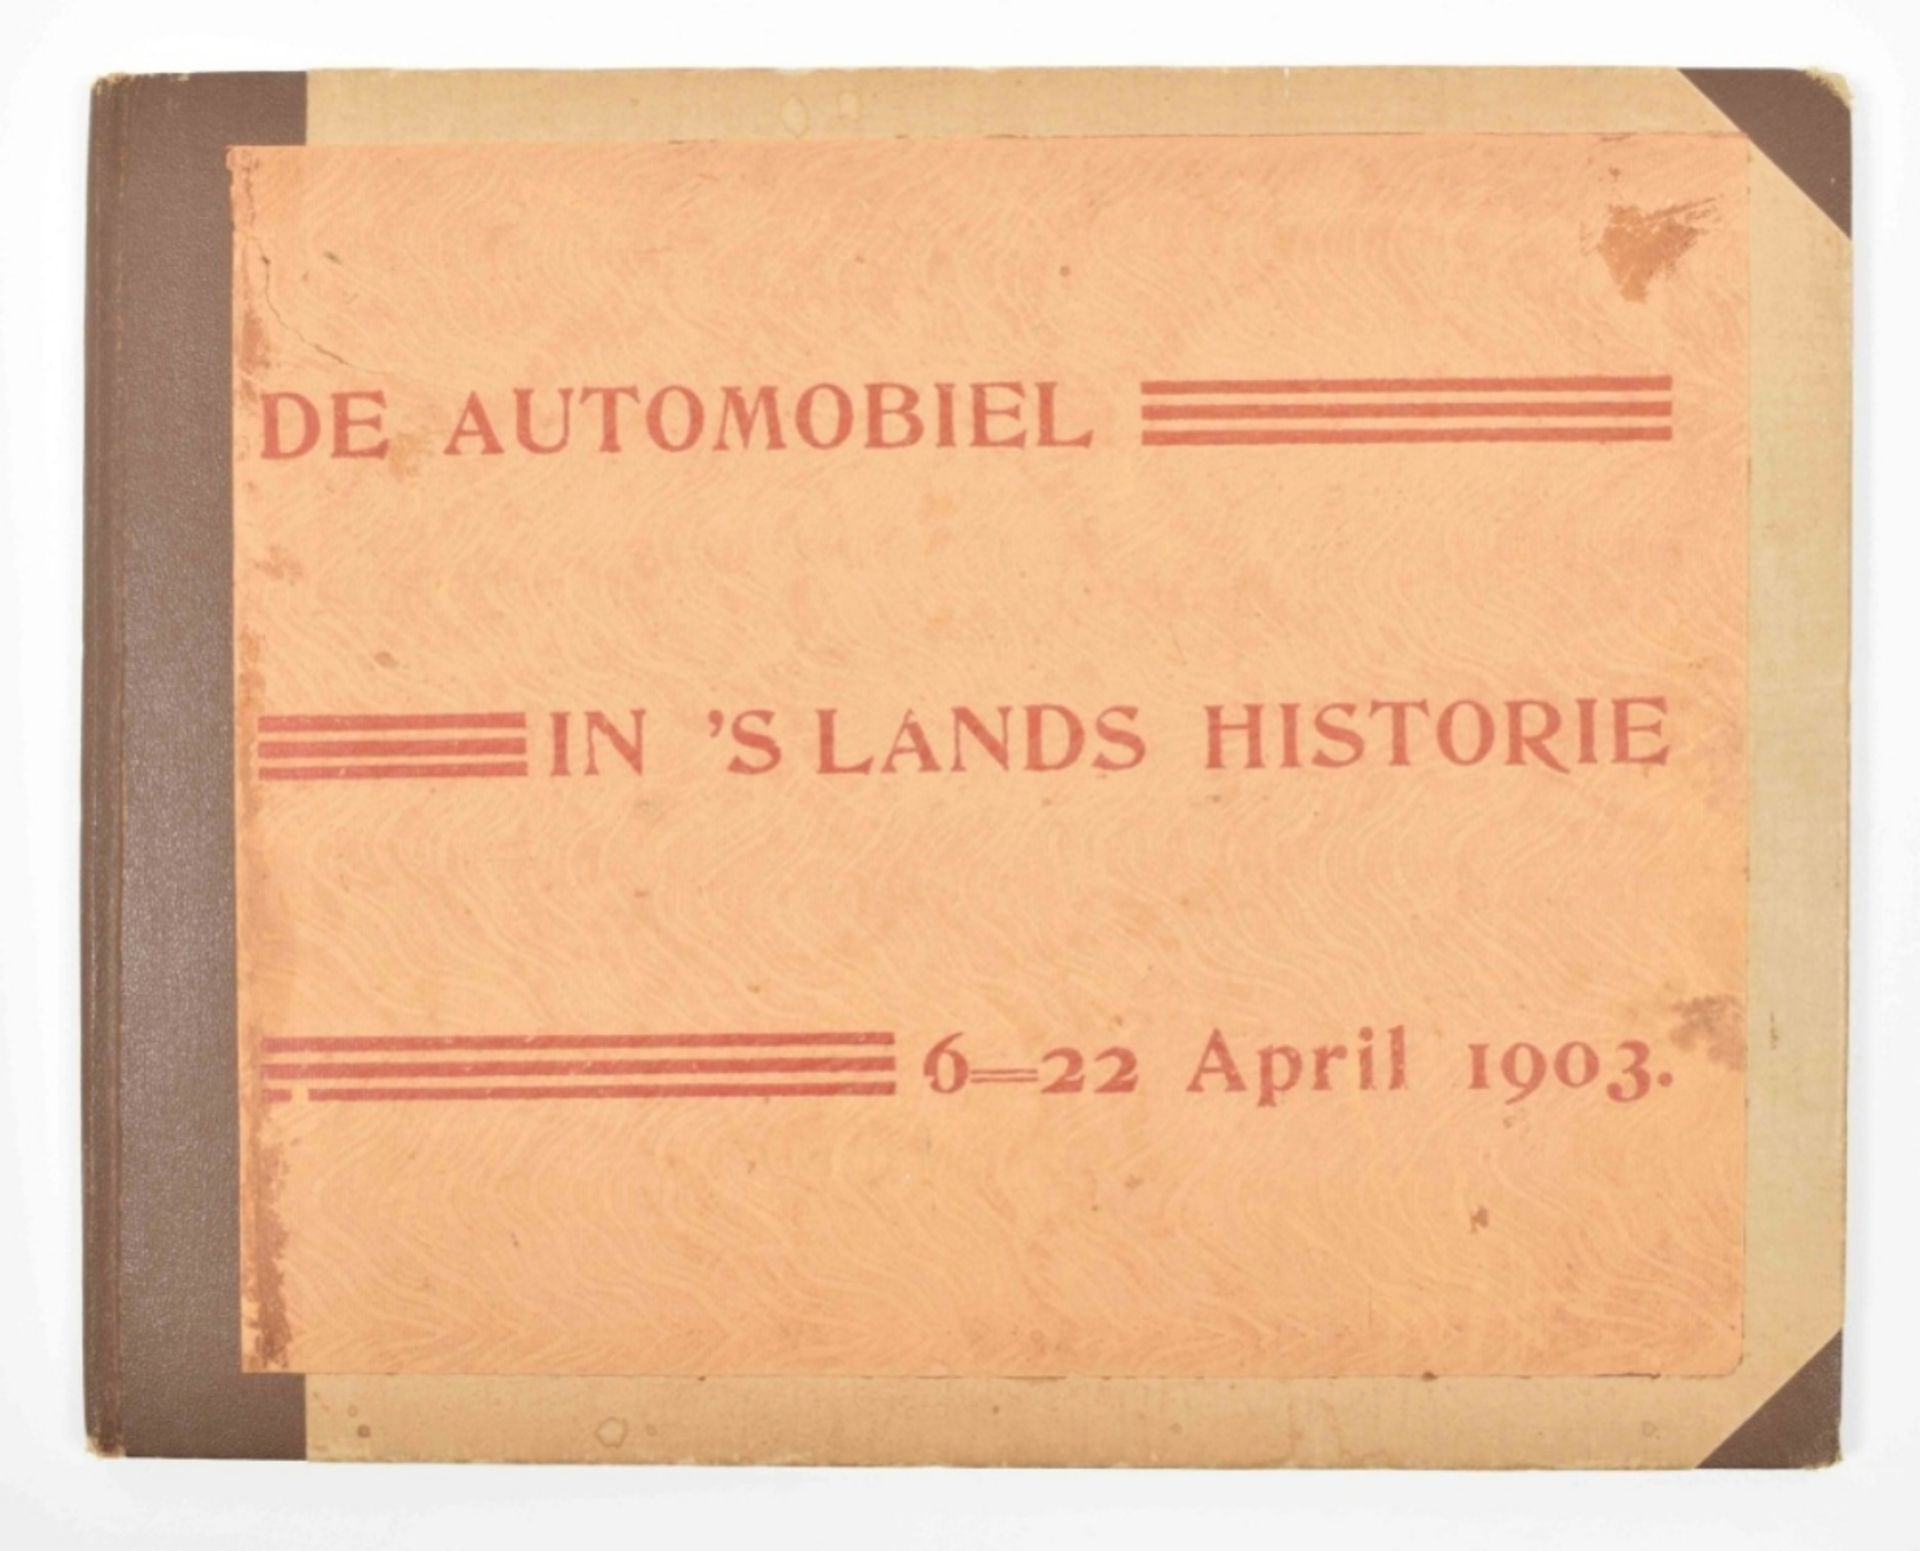 (B. Evert Lugard). De automobiel in 's lands historie 6-22 April 1903